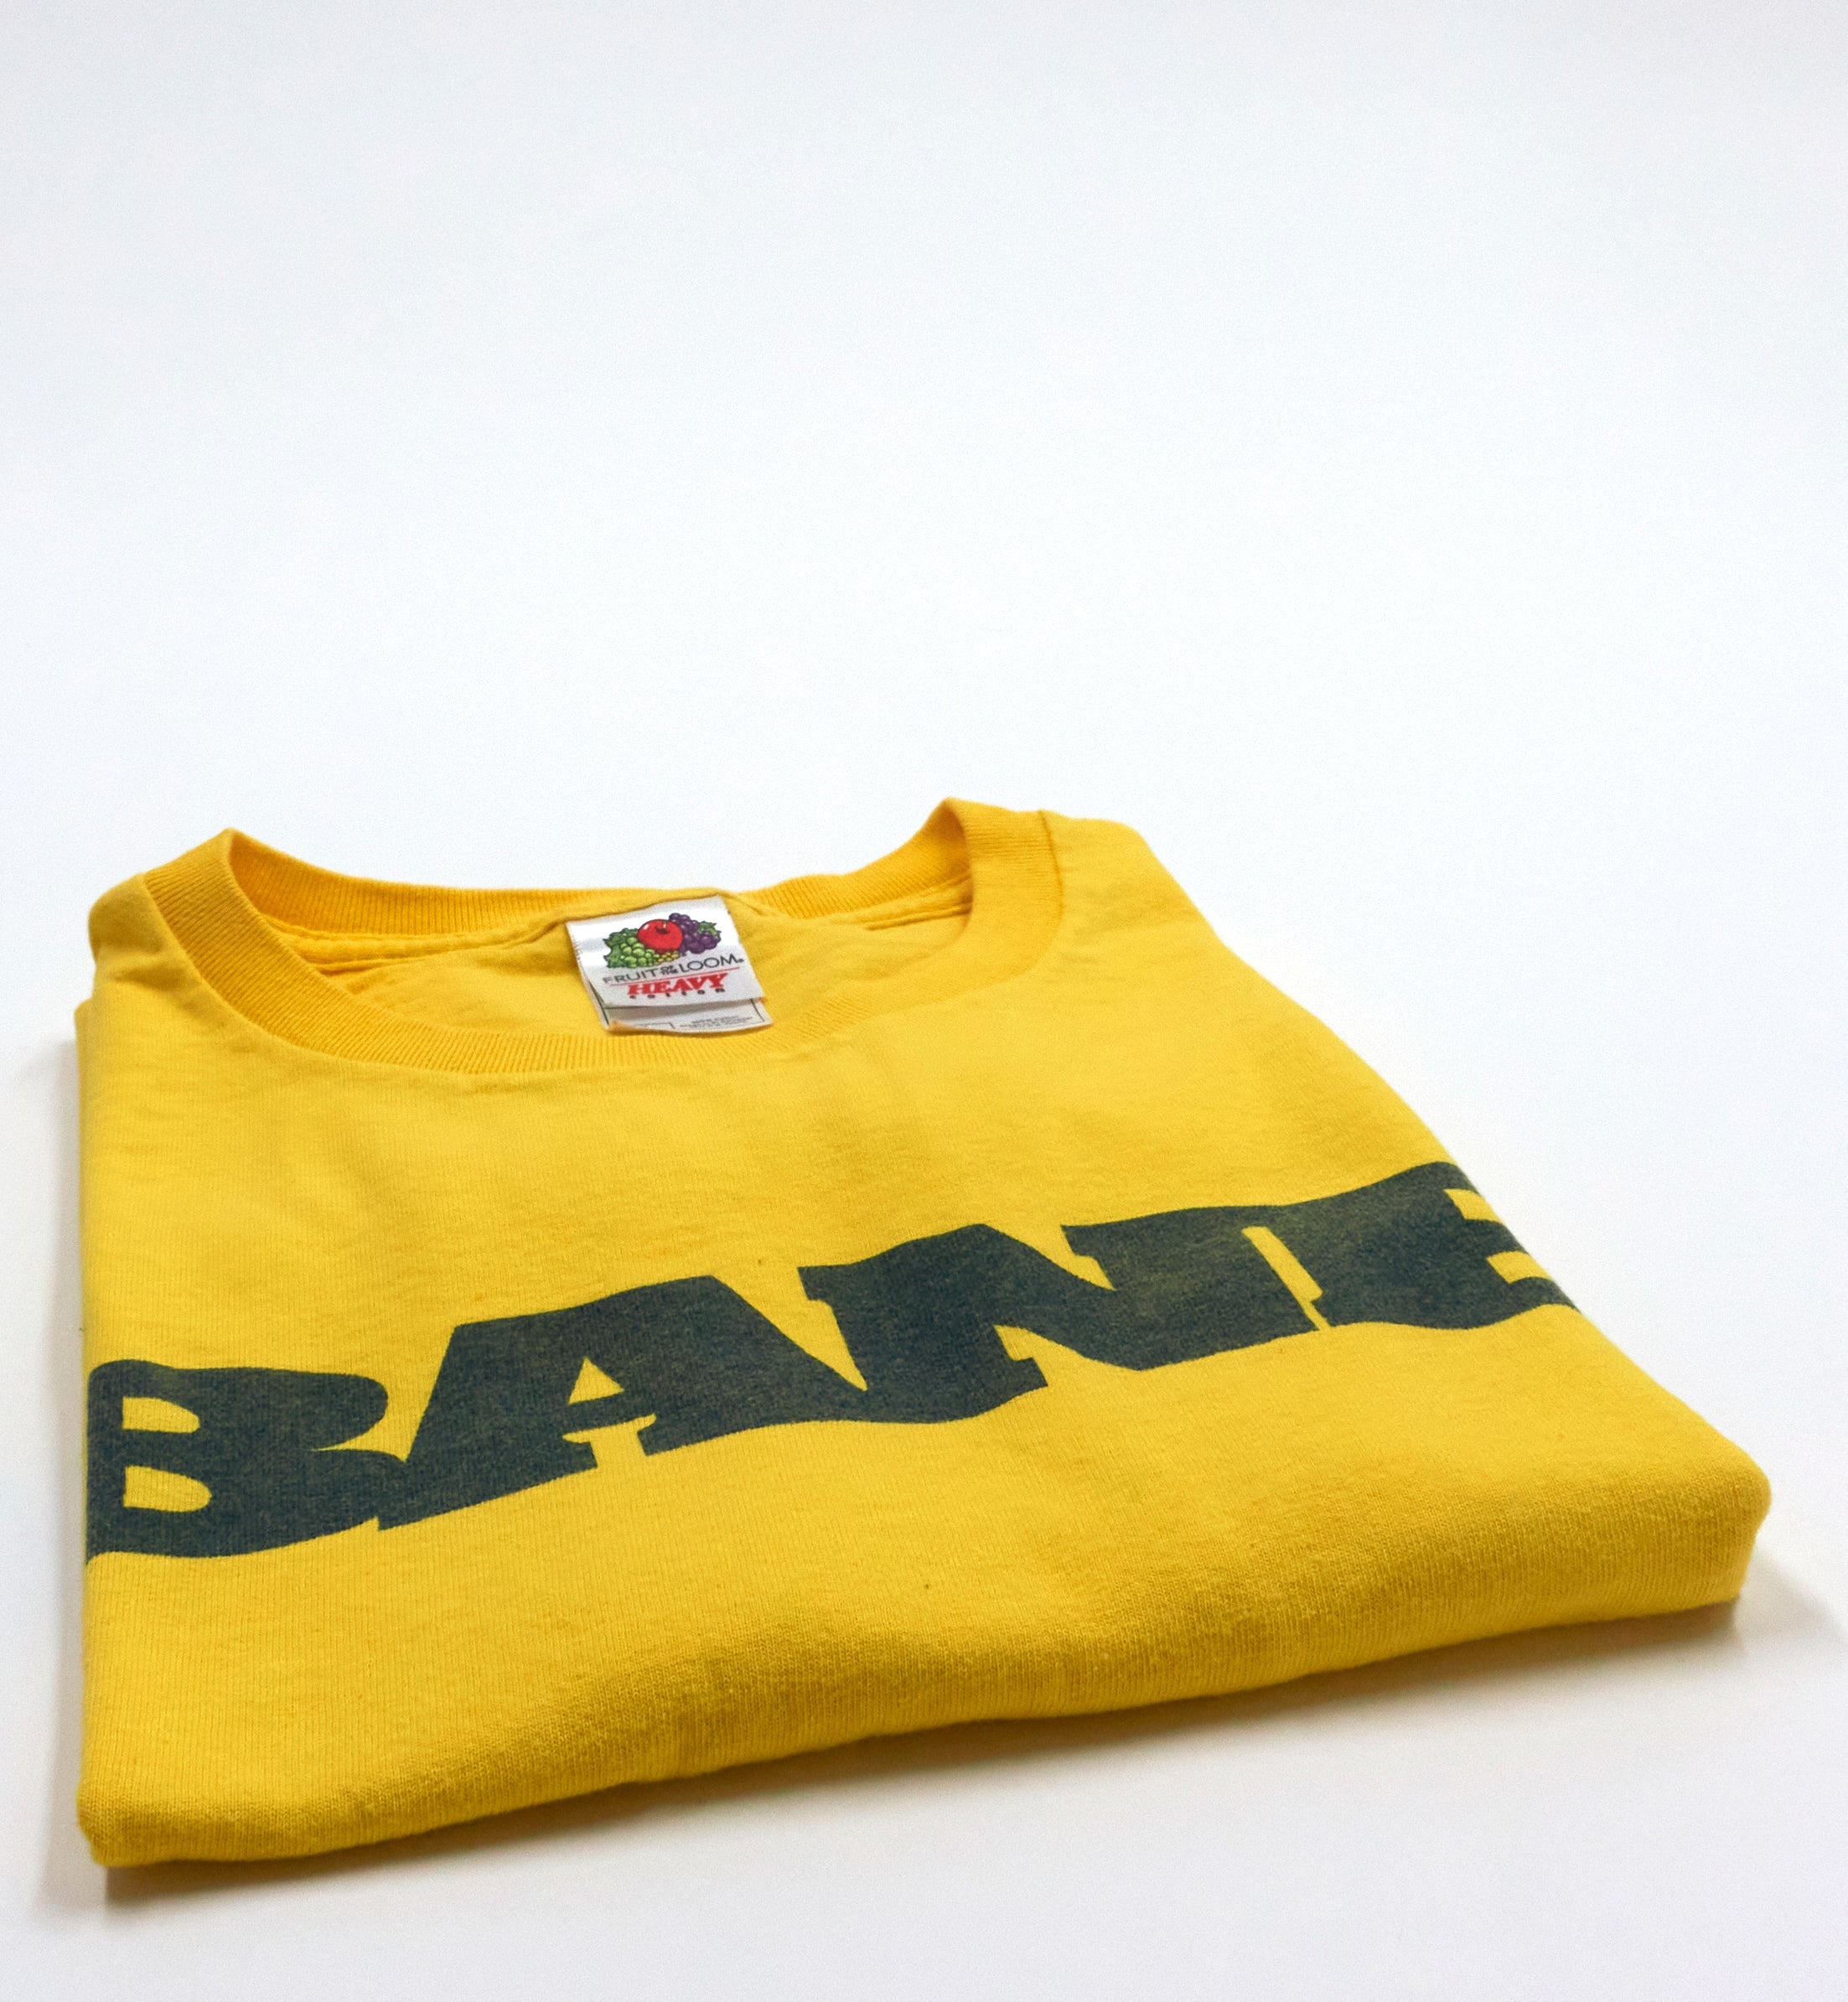 Bane – Logo Early 00's Tour Shirt Size XL